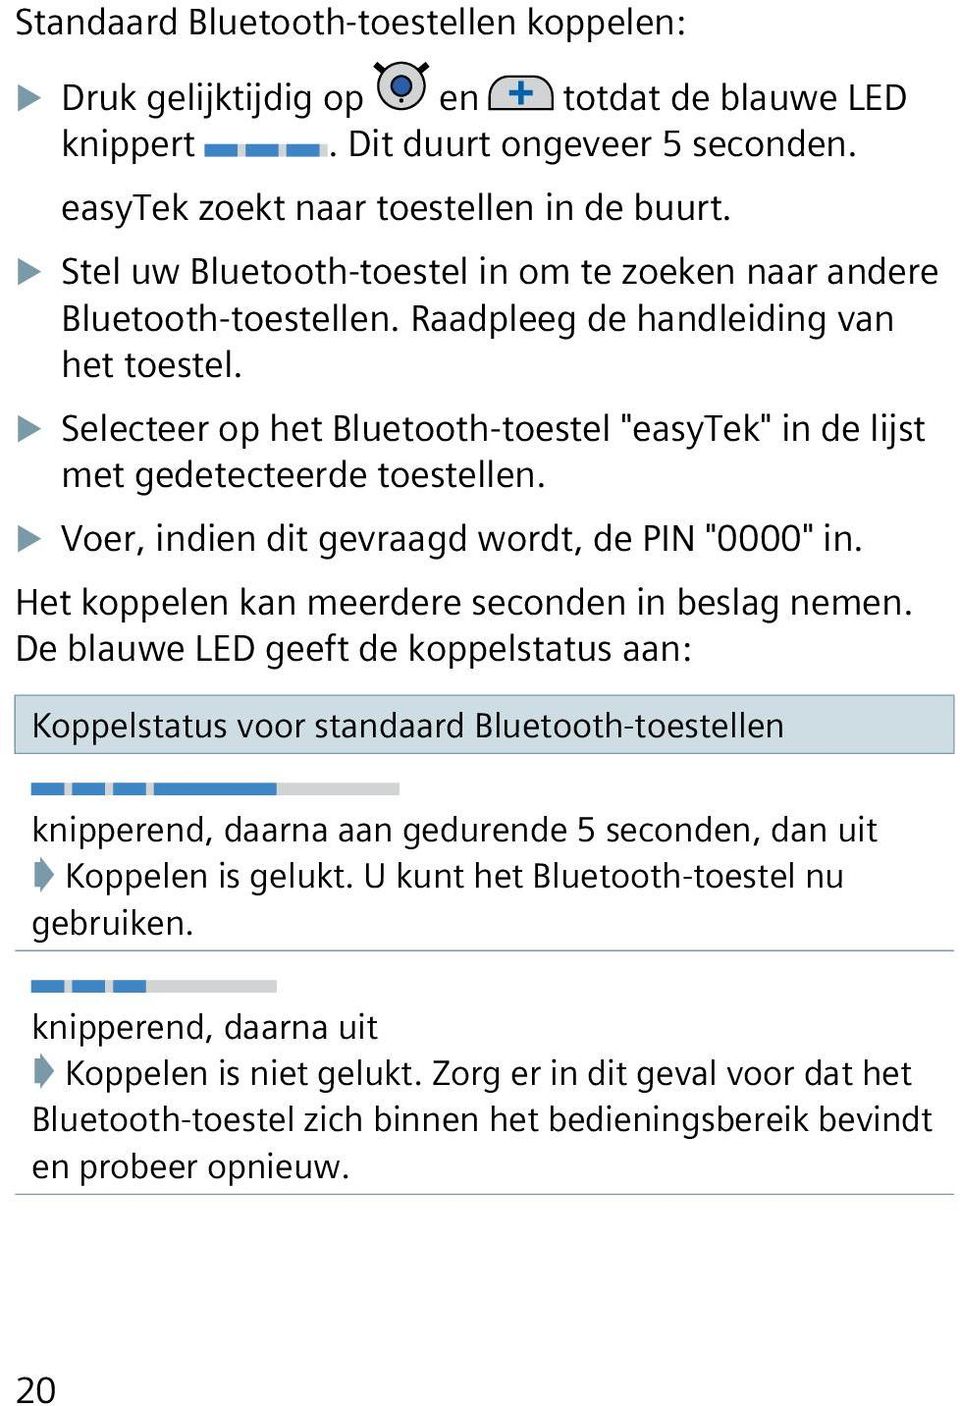 XXSelecteer op het Bluetooth-toestel "easytek" in de lijst met gedetecteerde toestellen. XXVoer, indien dit gevraagd wordt, de PIN "0000" in. Het koppelen kan meerdere seconden in beslag nemen.